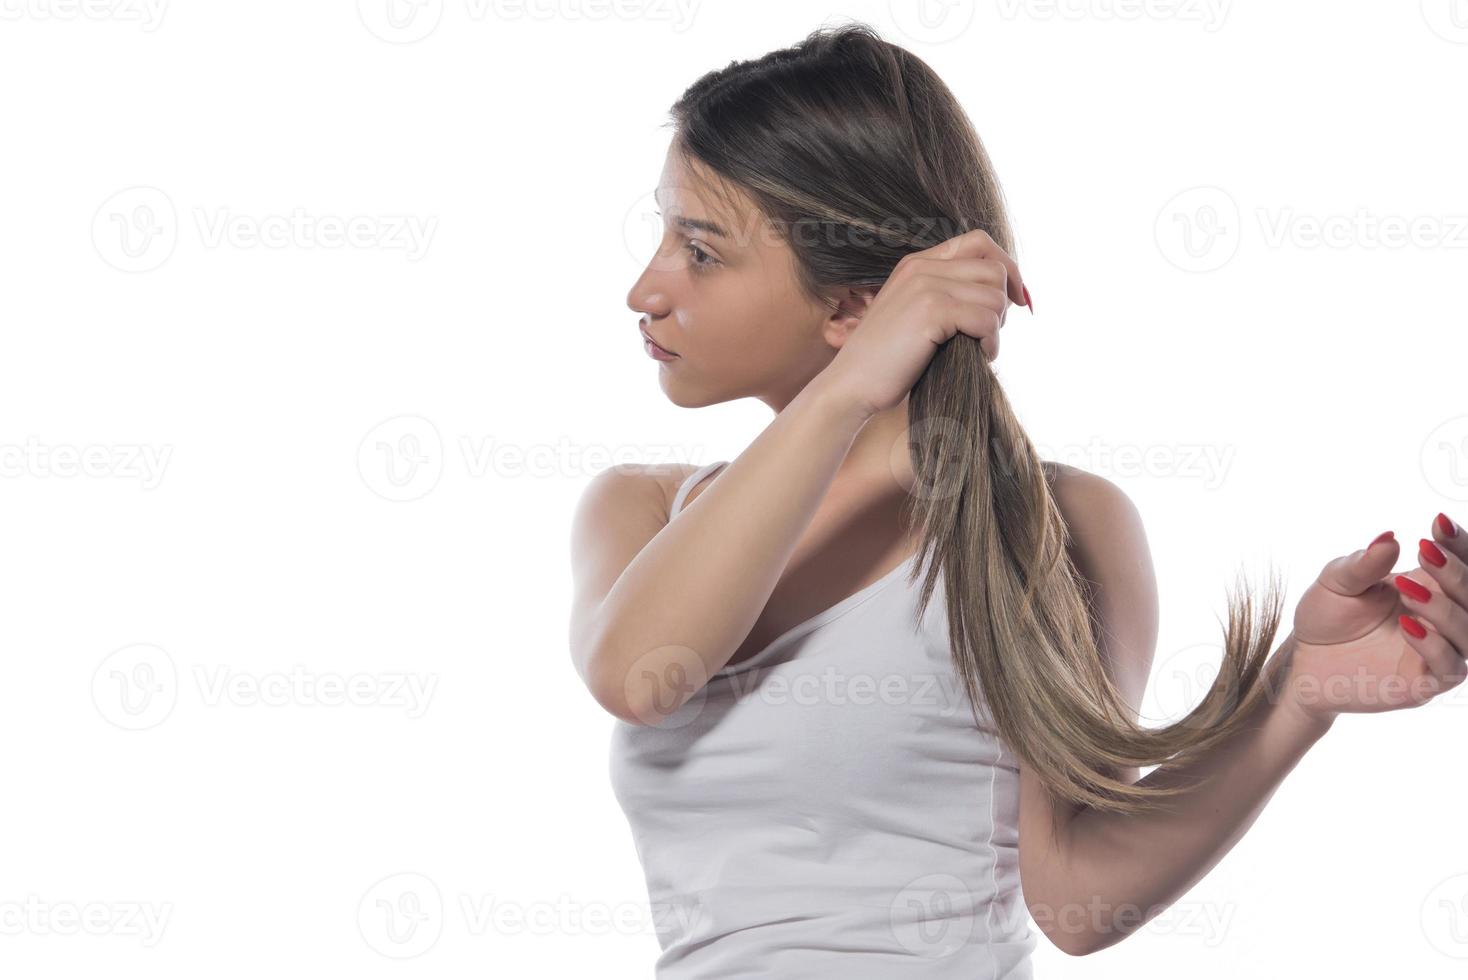 eine junge schöne frau band ihr haar mit einem gummiband zusammen foto